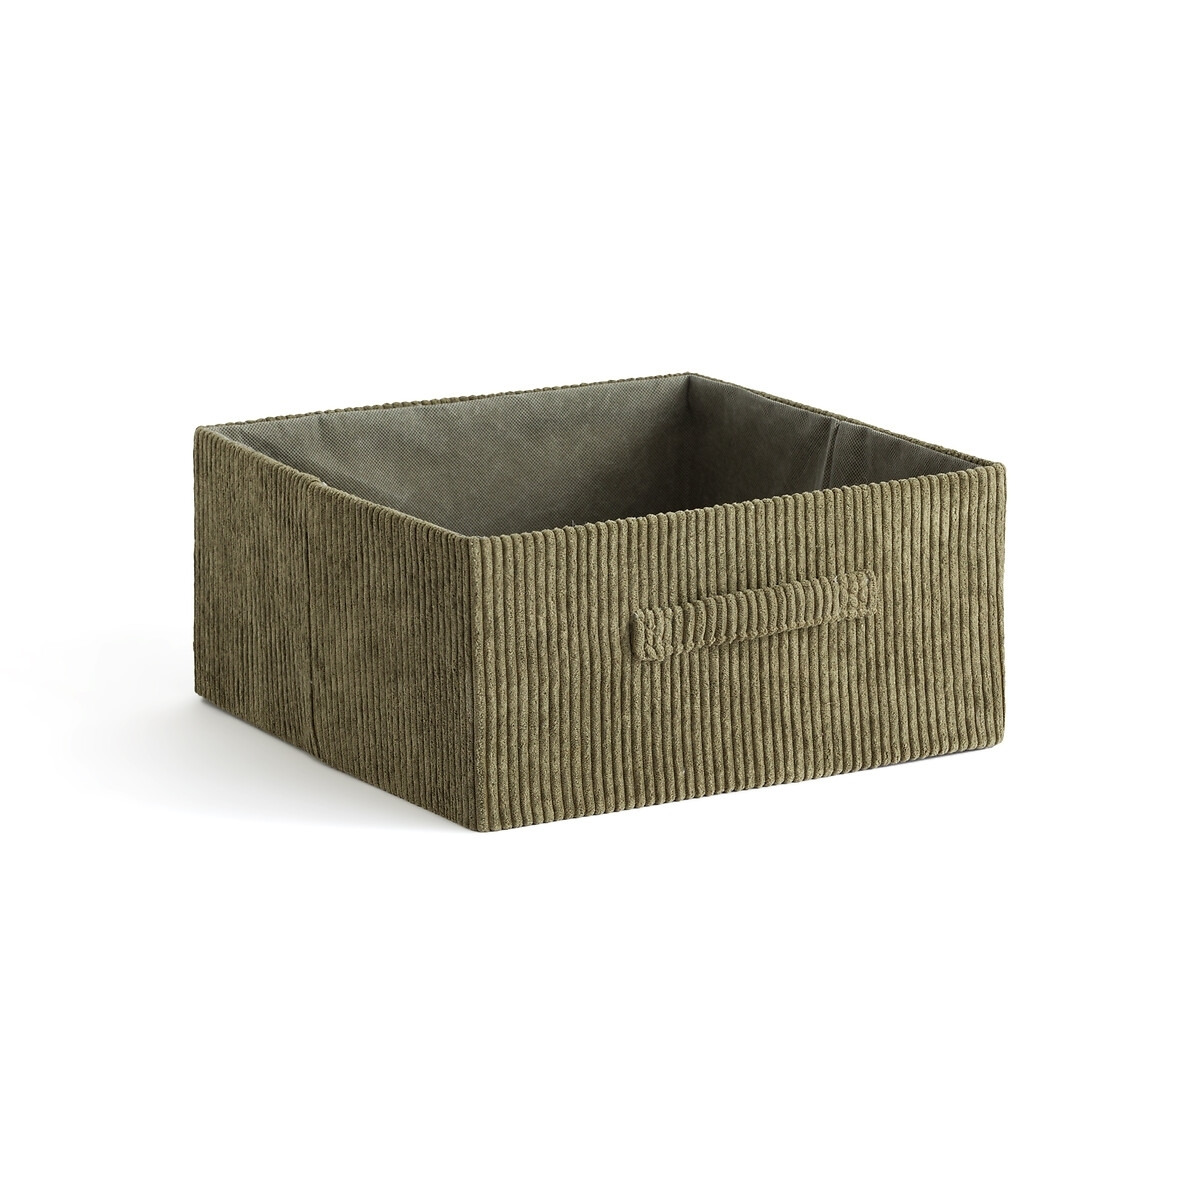 Veloudo Foldable Corduroy Basket - image 1